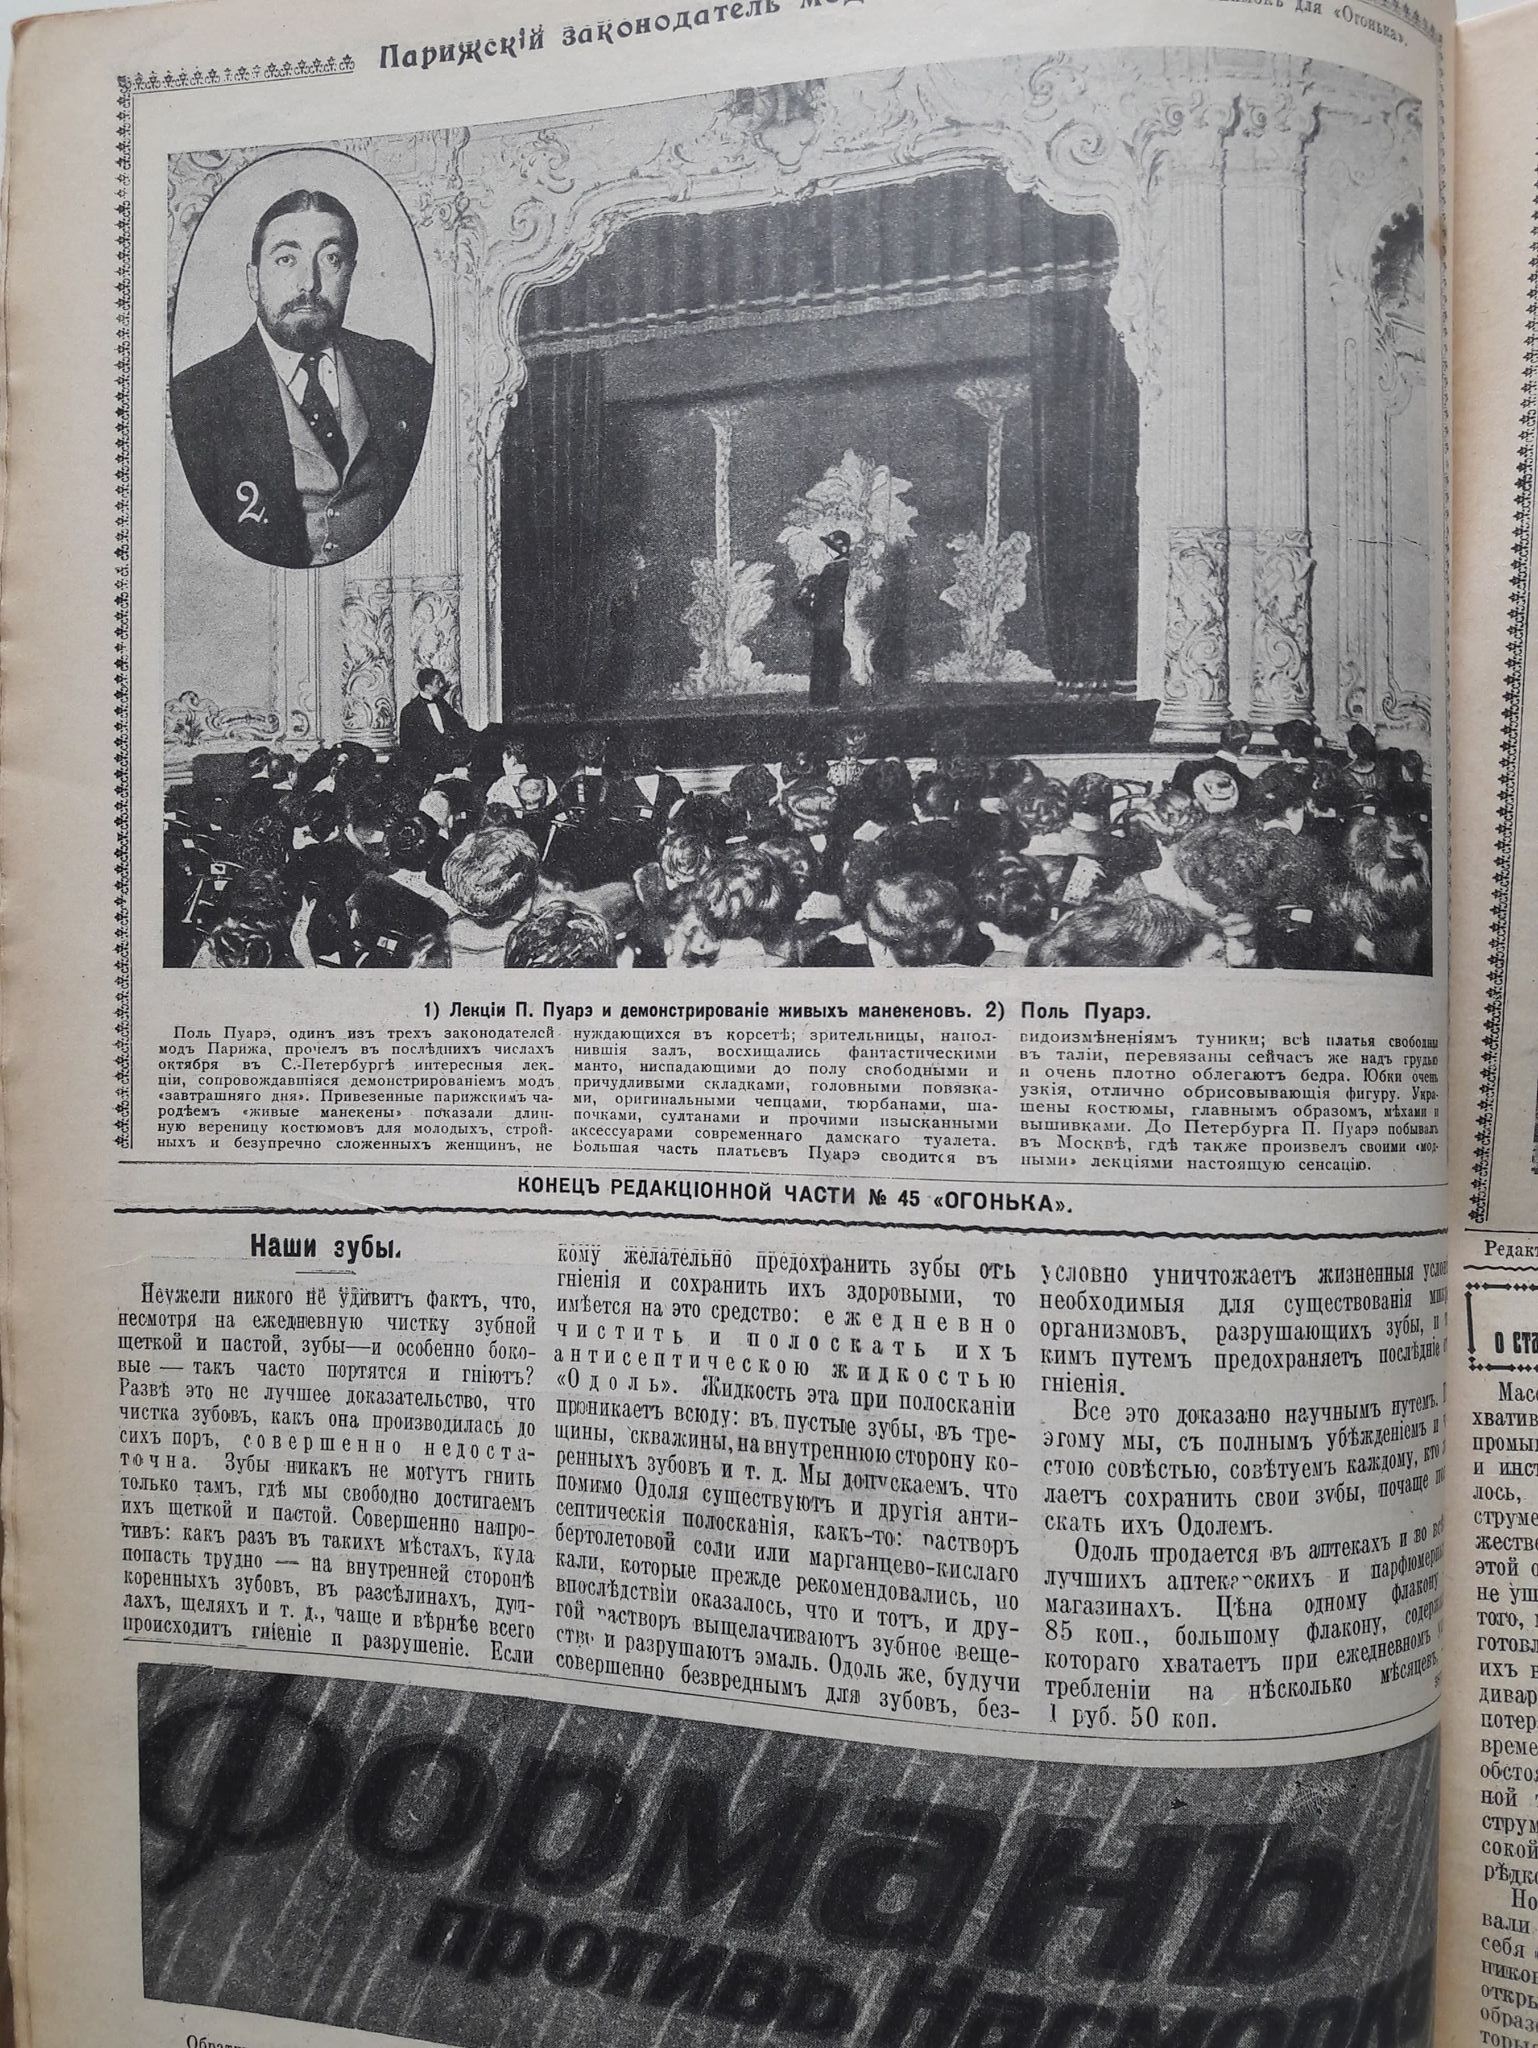 Журнал Огонек №45 1911 год